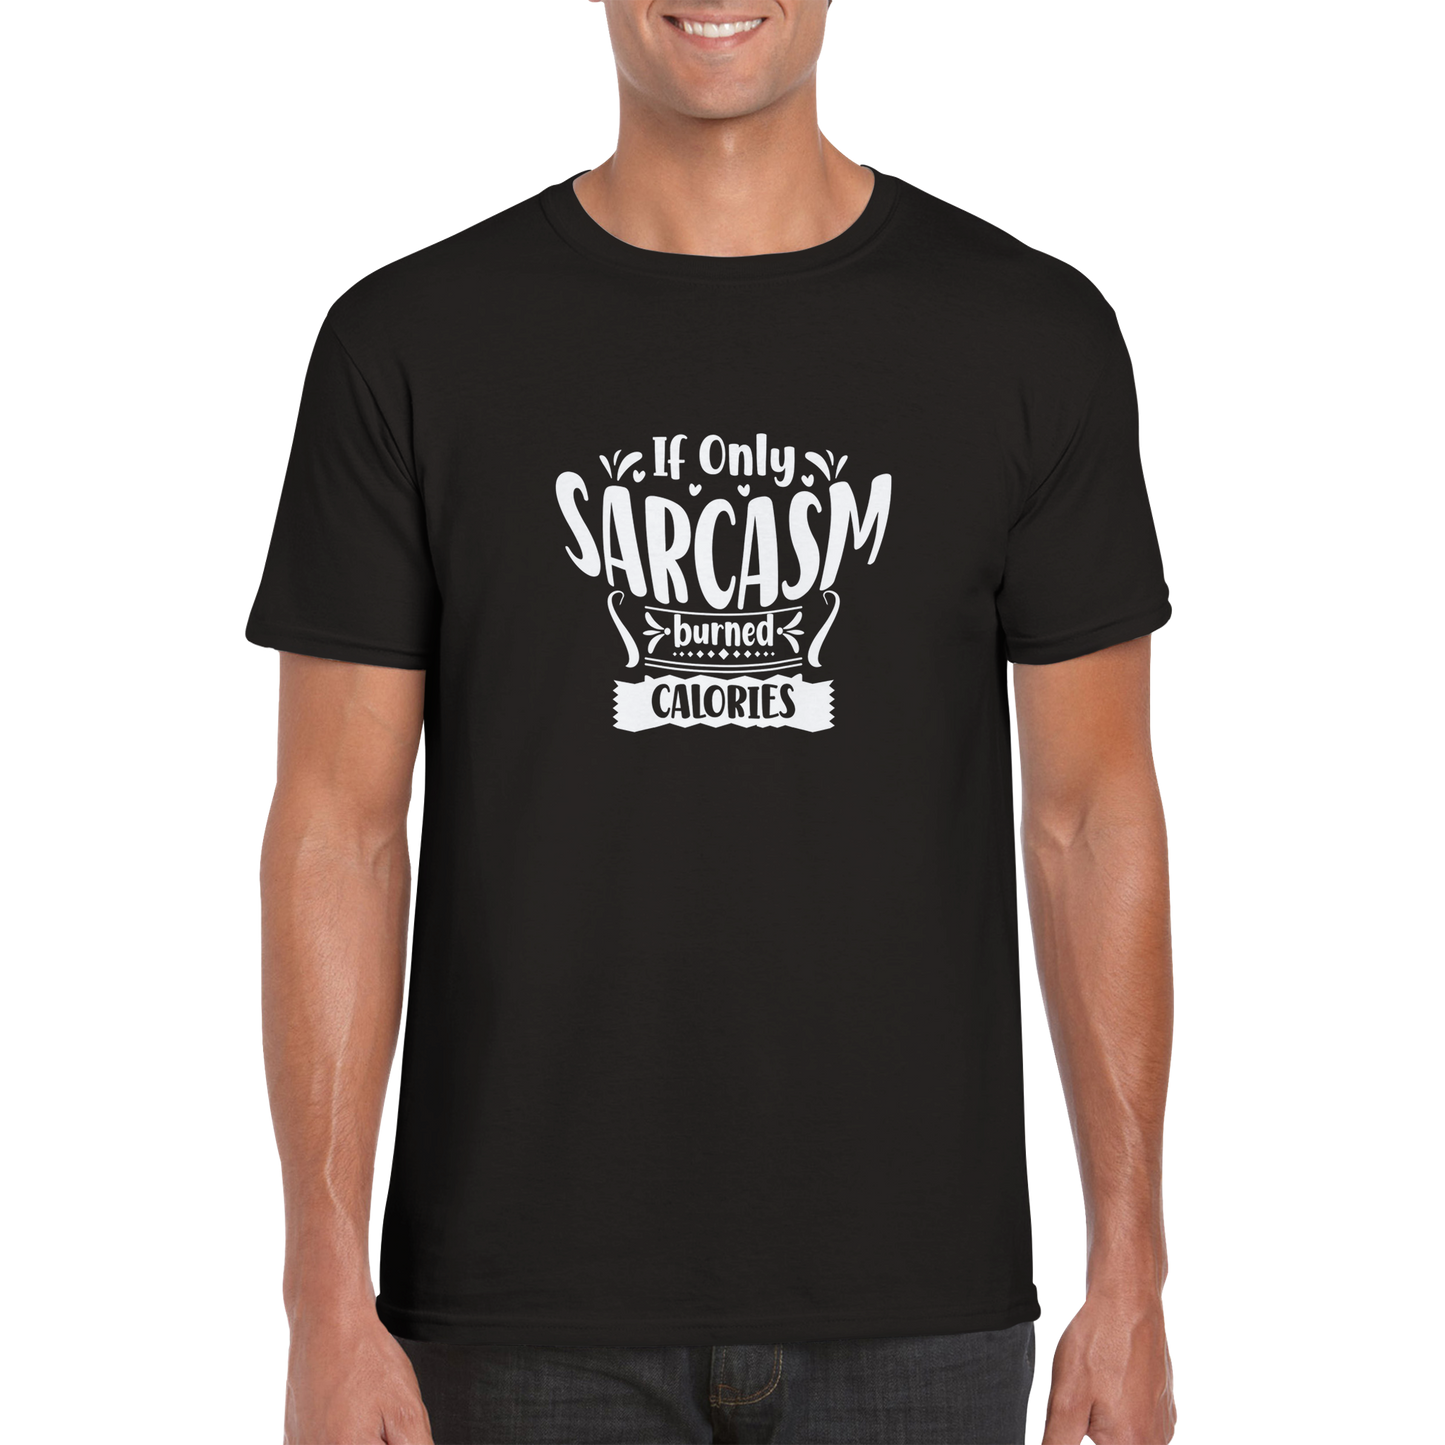 Sarcasm Calories Sarcasm Shirt - Classic Unisex Crewneck T-shirt